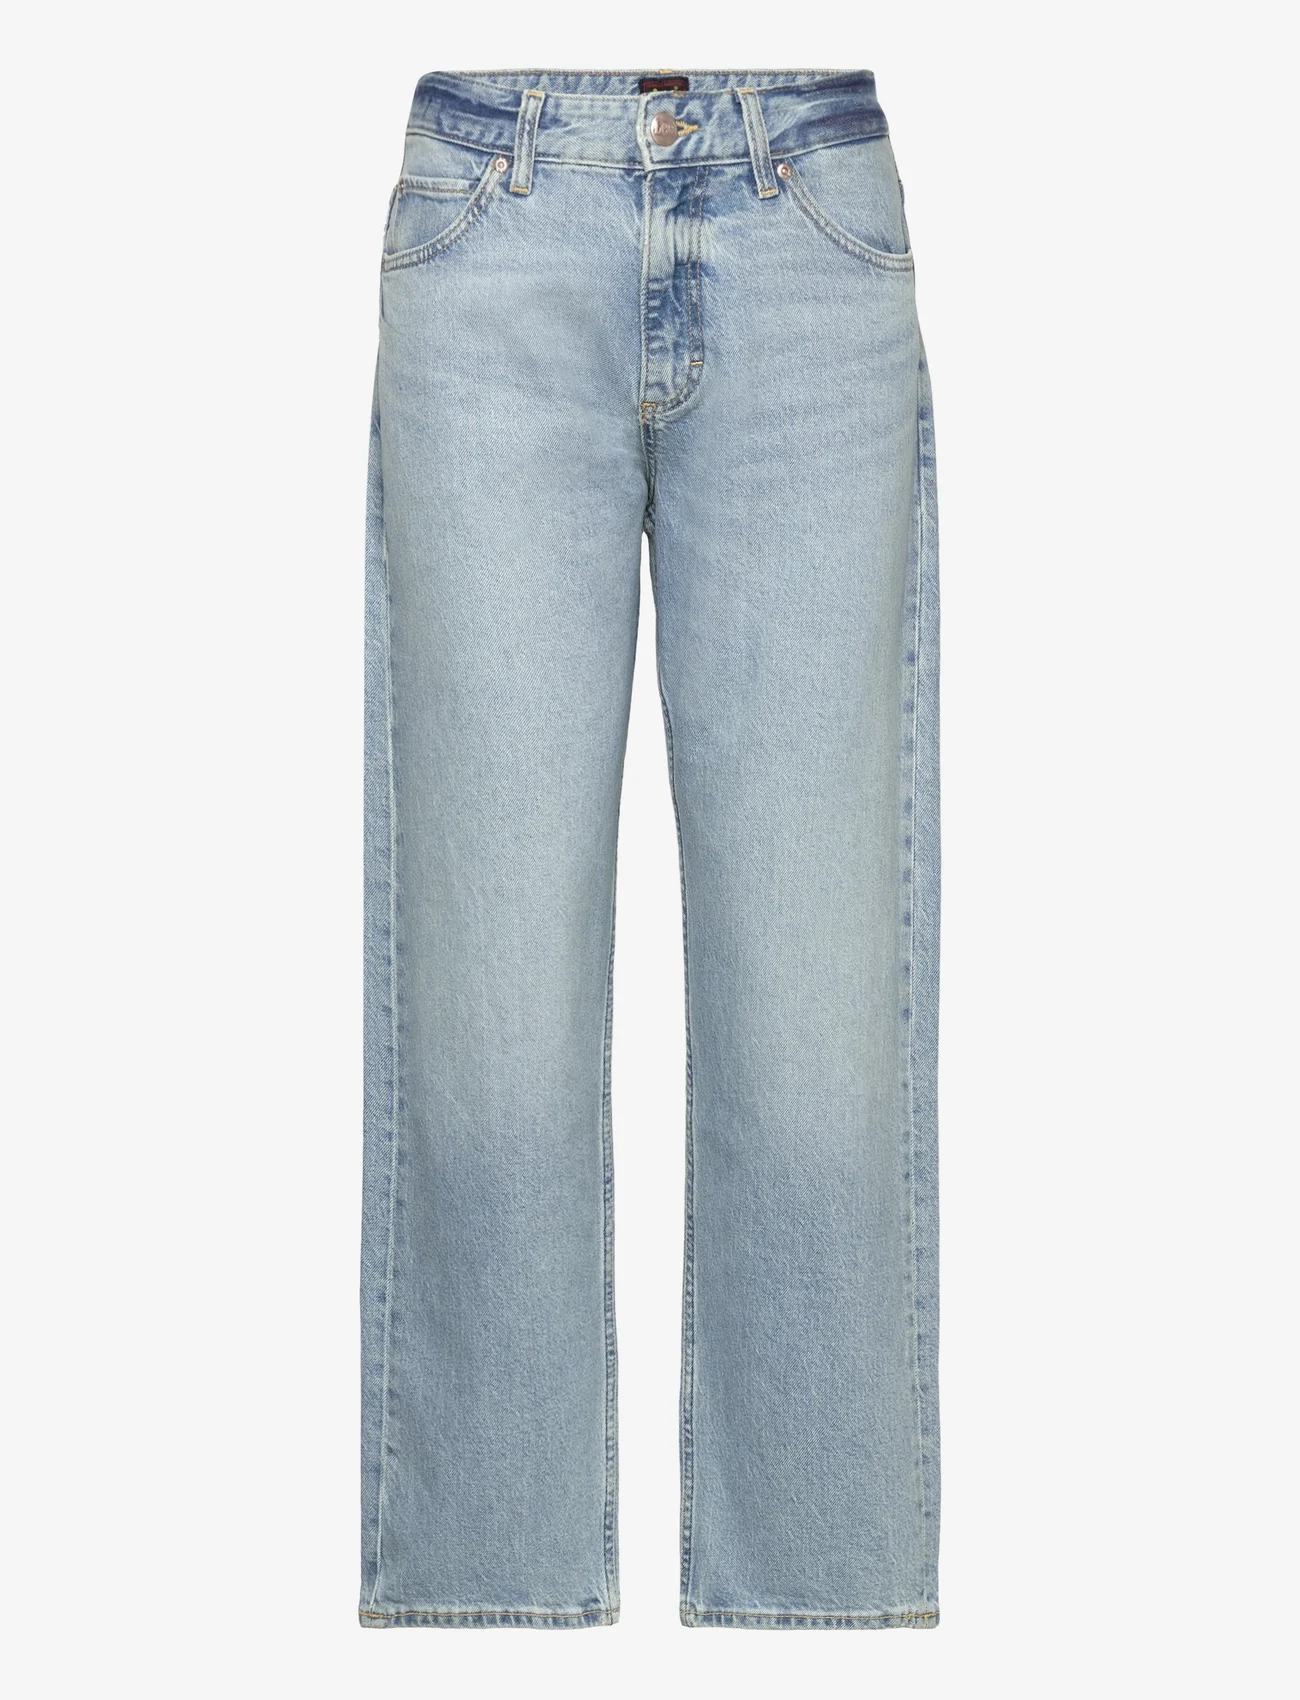 Lee Jeans - RIDER CLASSIC - tiesaus kirpimo džinsai - light the way - 0